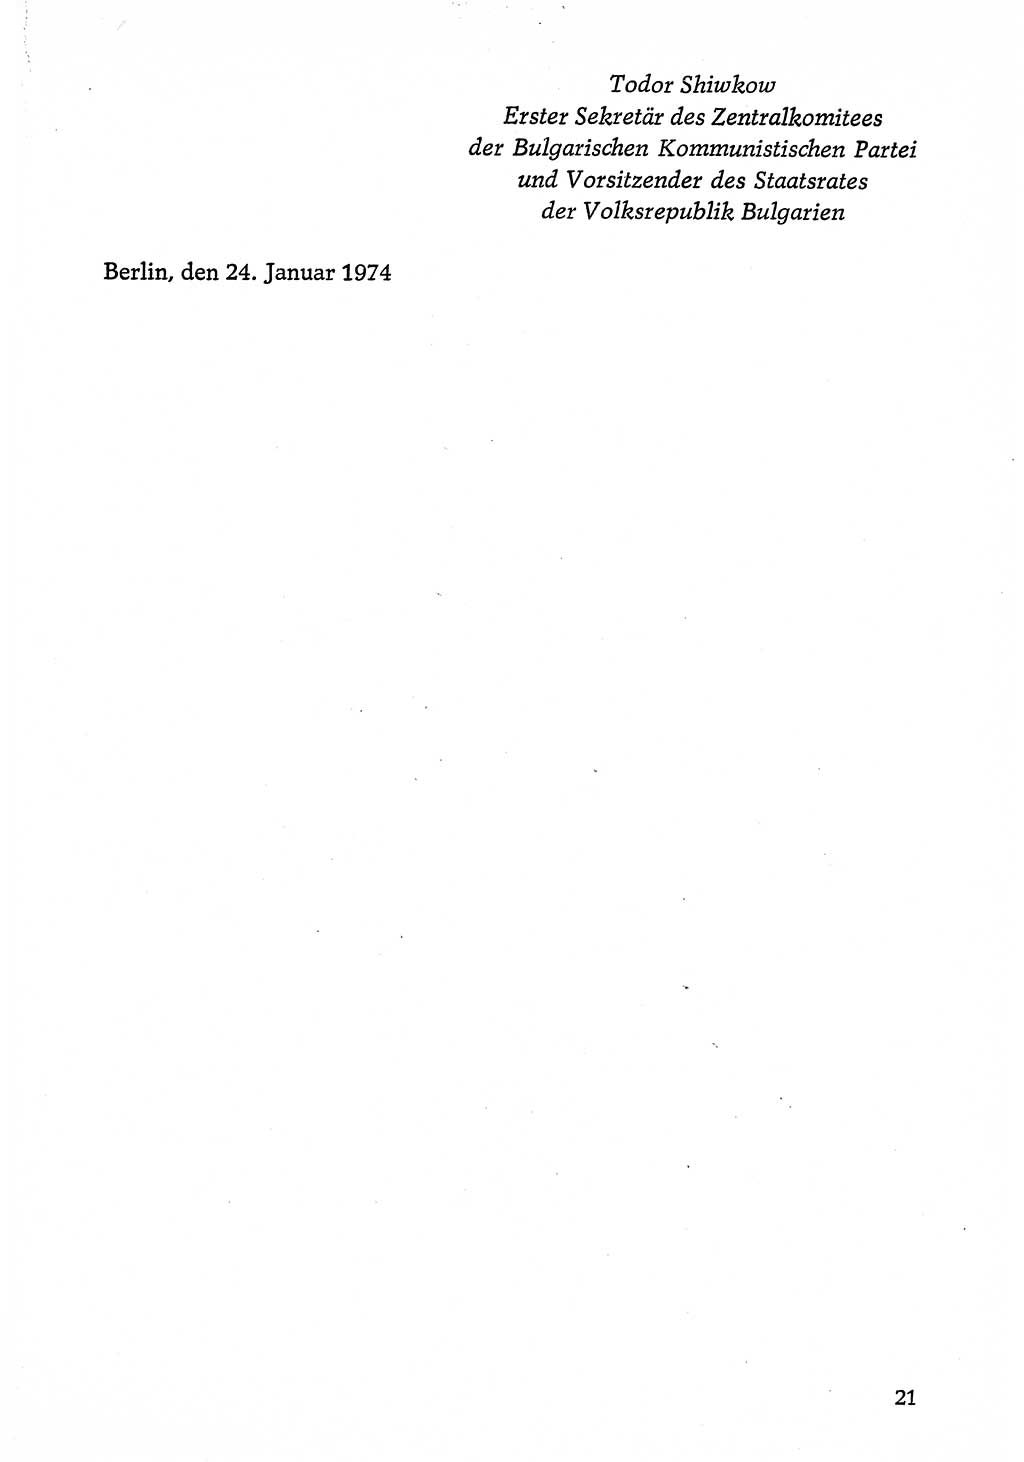 Dokumente der Sozialistischen Einheitspartei Deutschlands (SED) [Deutsche Demokratische Republik (DDR)] 1974-1975, Seite 21 (Dok. SED DDR 1978, Bd. ⅩⅤ, S. 21)